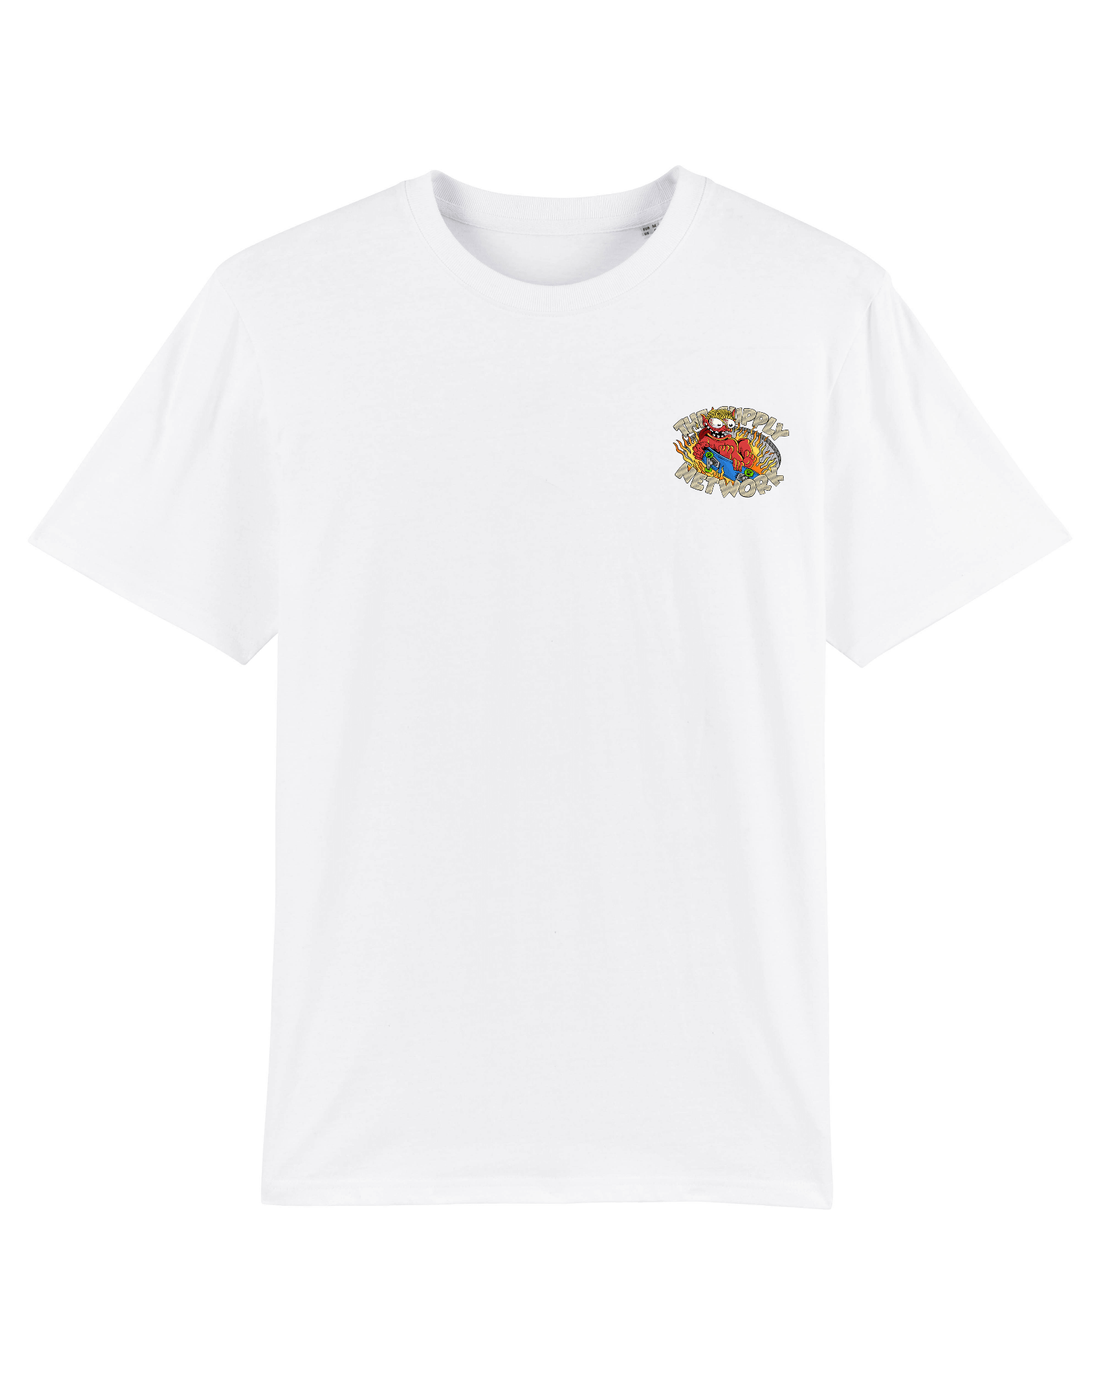 White Skater T-Shirt, Devil Baby Front Print